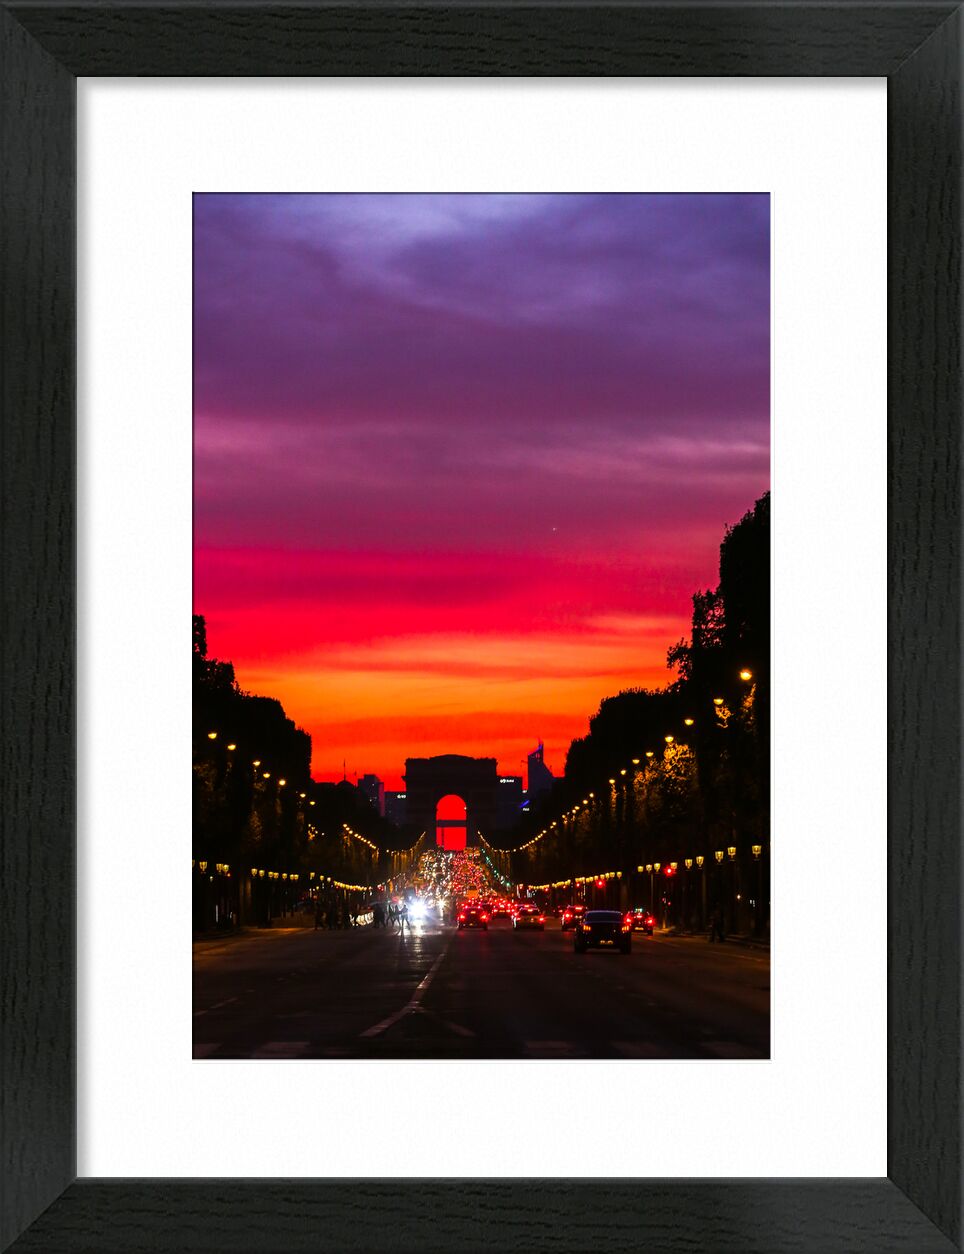 Arc de Triomphe. Avenue des Champs-Élysées, Paris de Octav Dragan, Prodi Art, paris, champselysees, Arc de Triomphe, couché de soleil, crépuscule, nuit